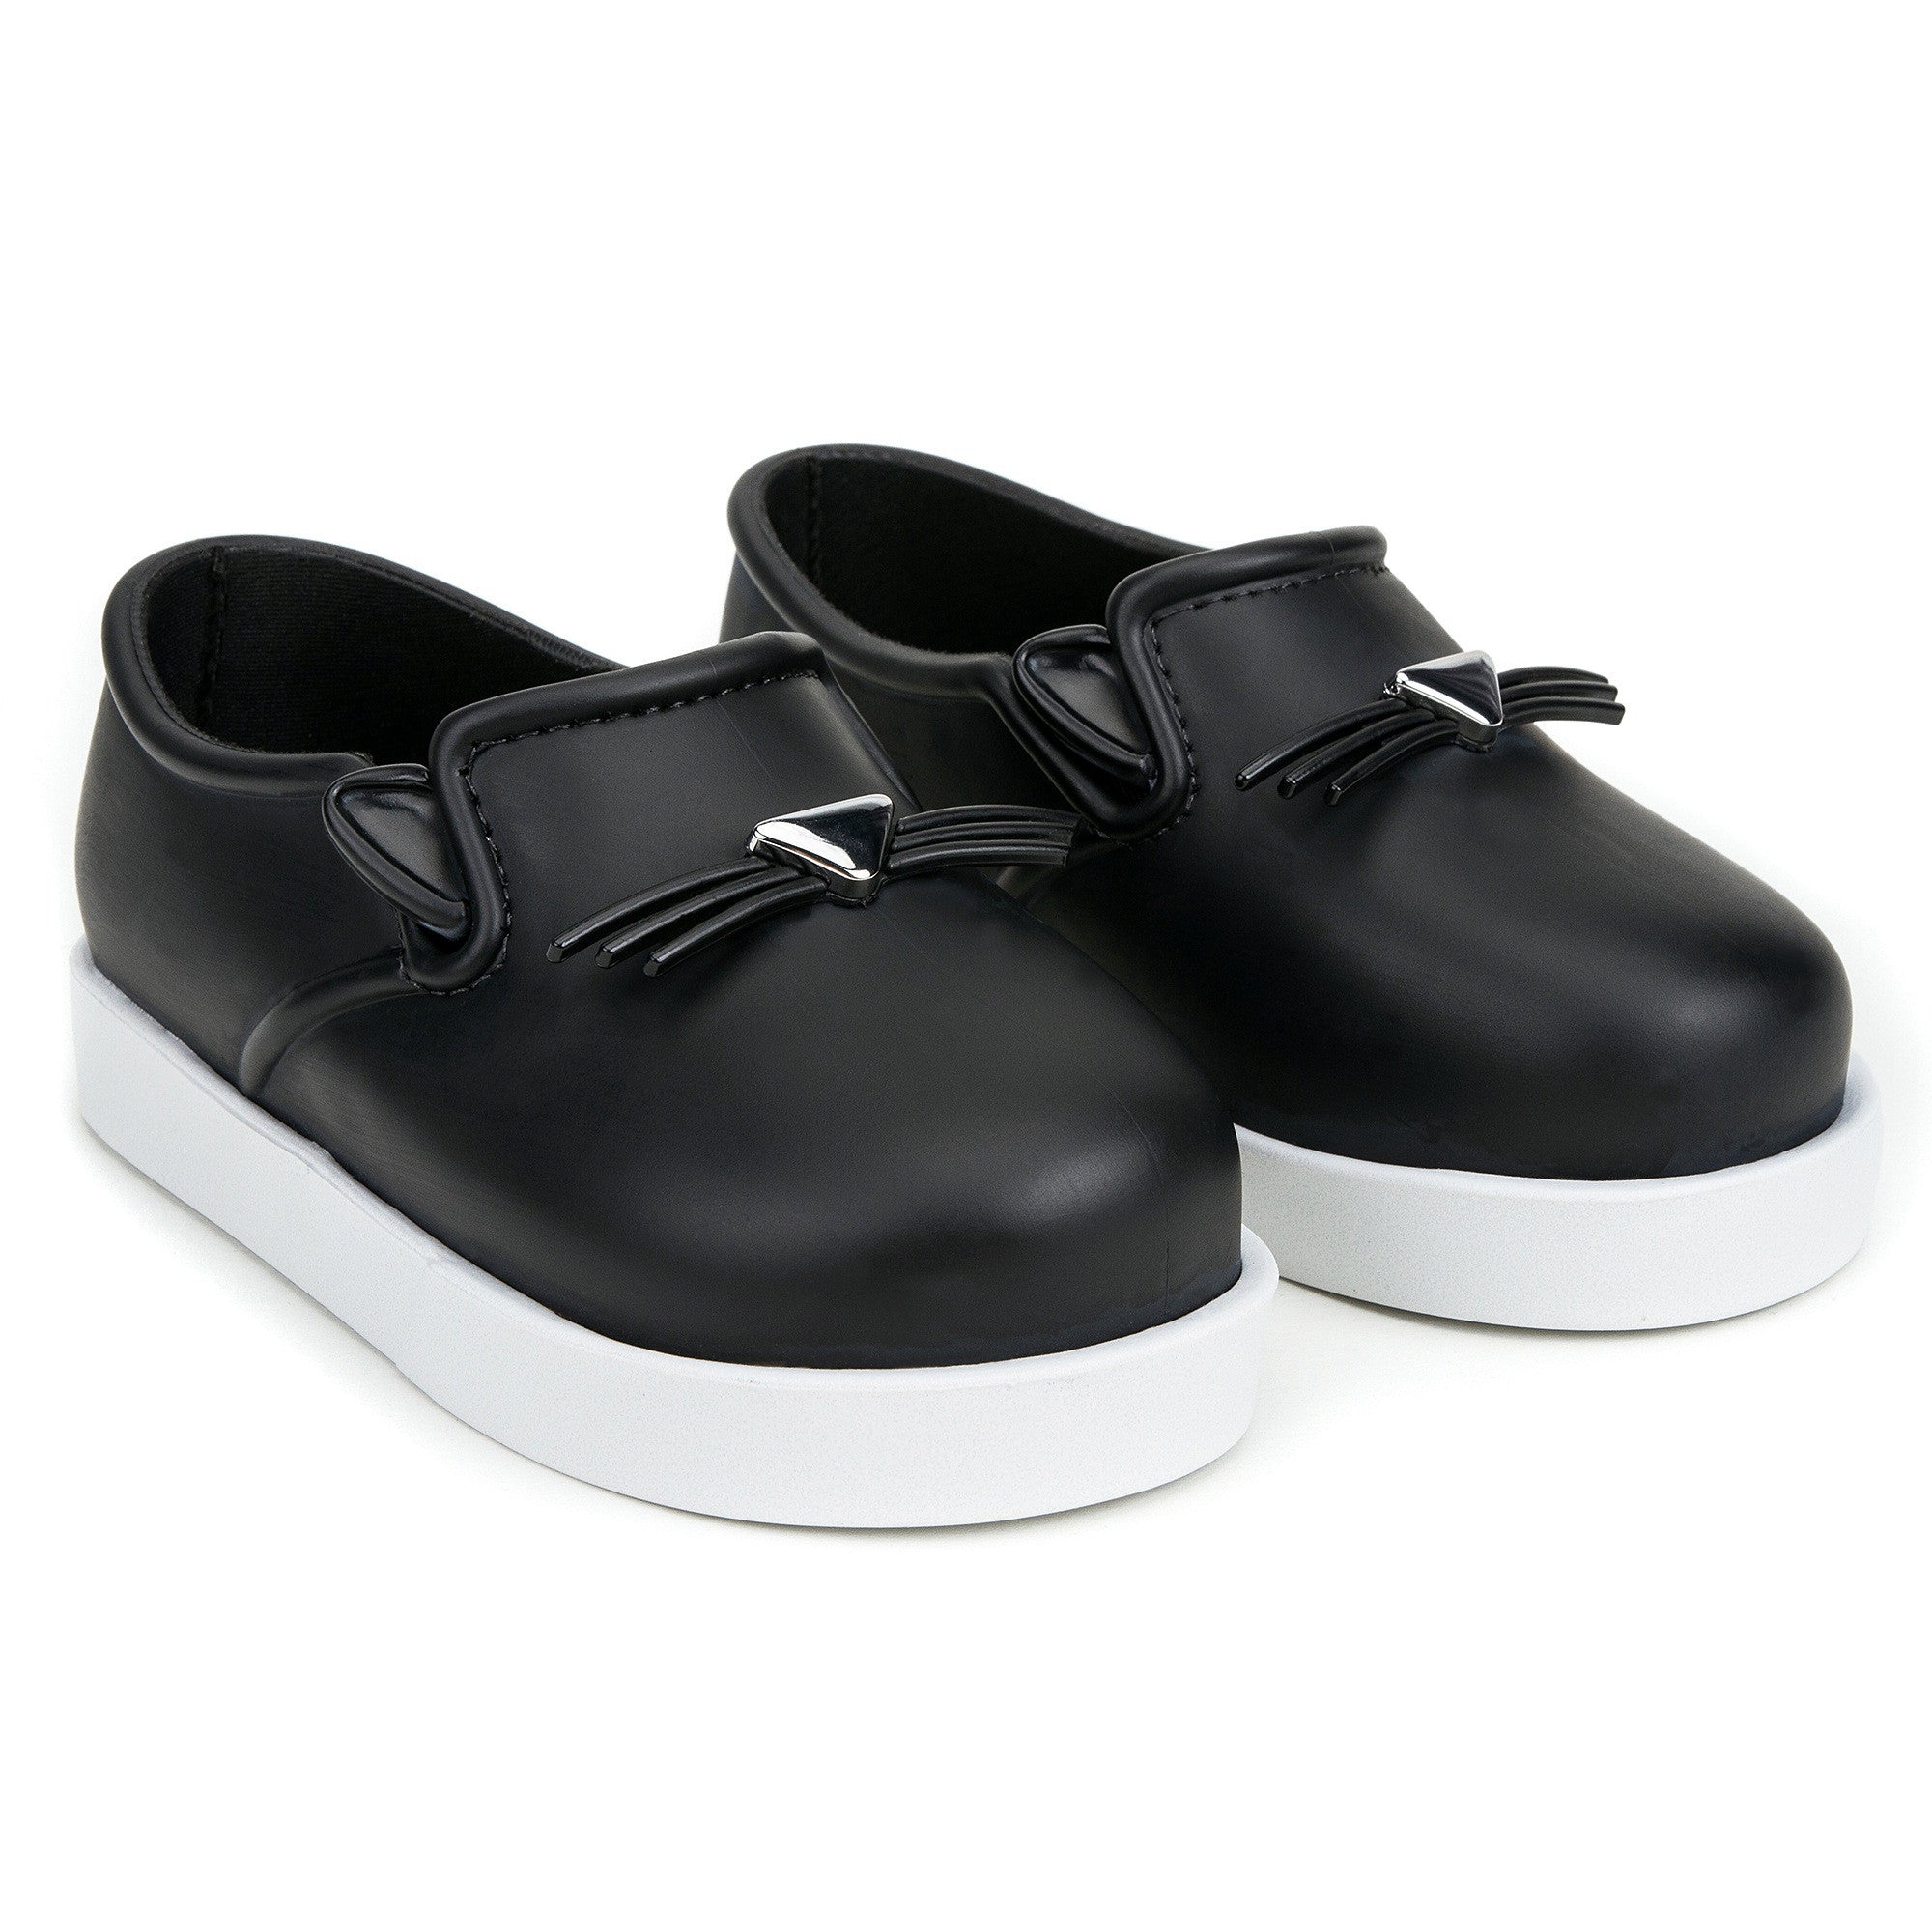 Boys &Girls Black 'Cat' Slip-On Shoes